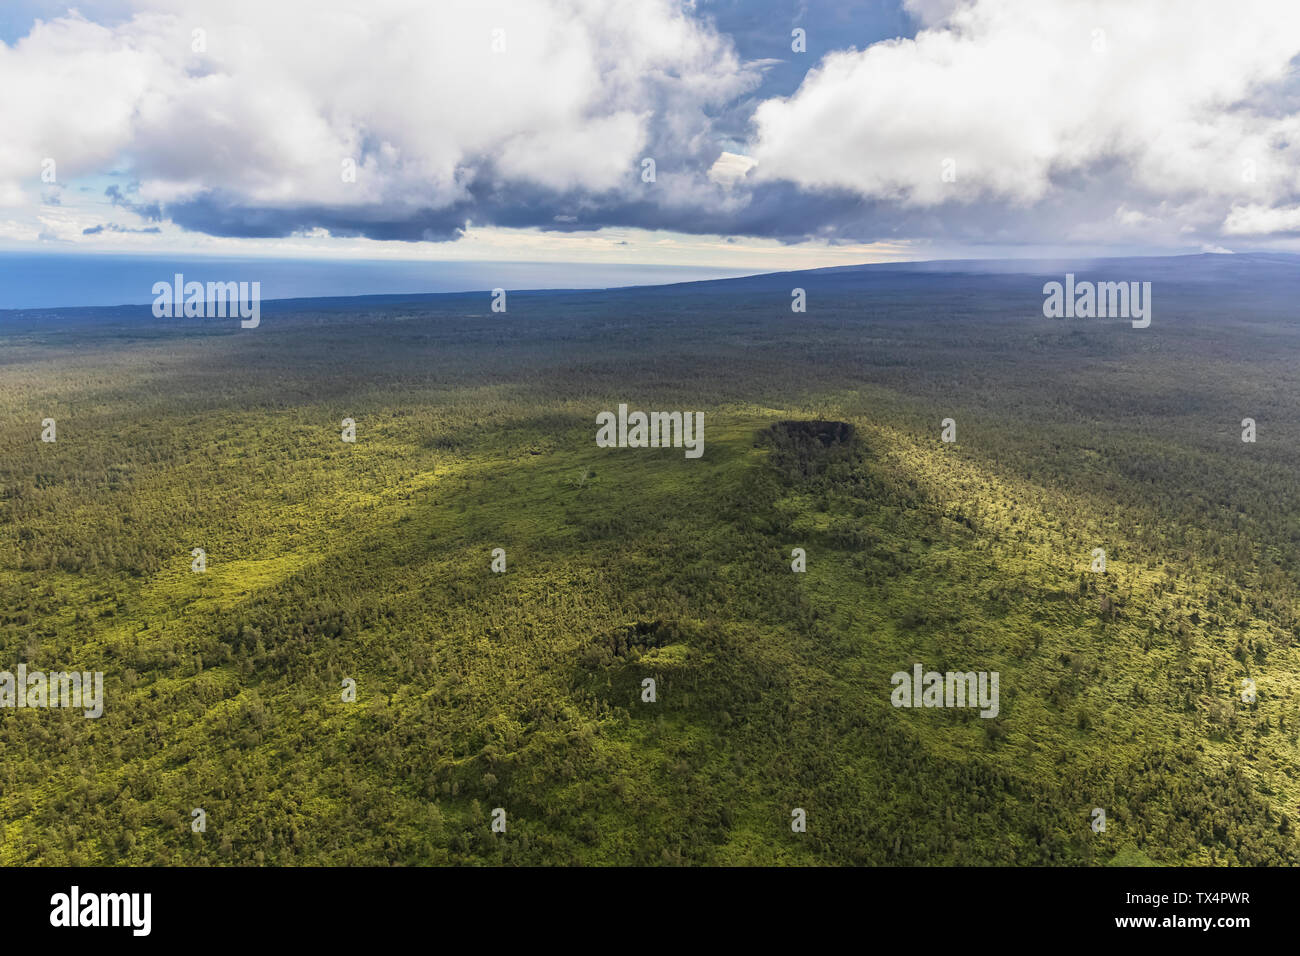 USA, Hawaii, Big Island, vue aérienne de la réserve forestière de Puna Banque D'Images